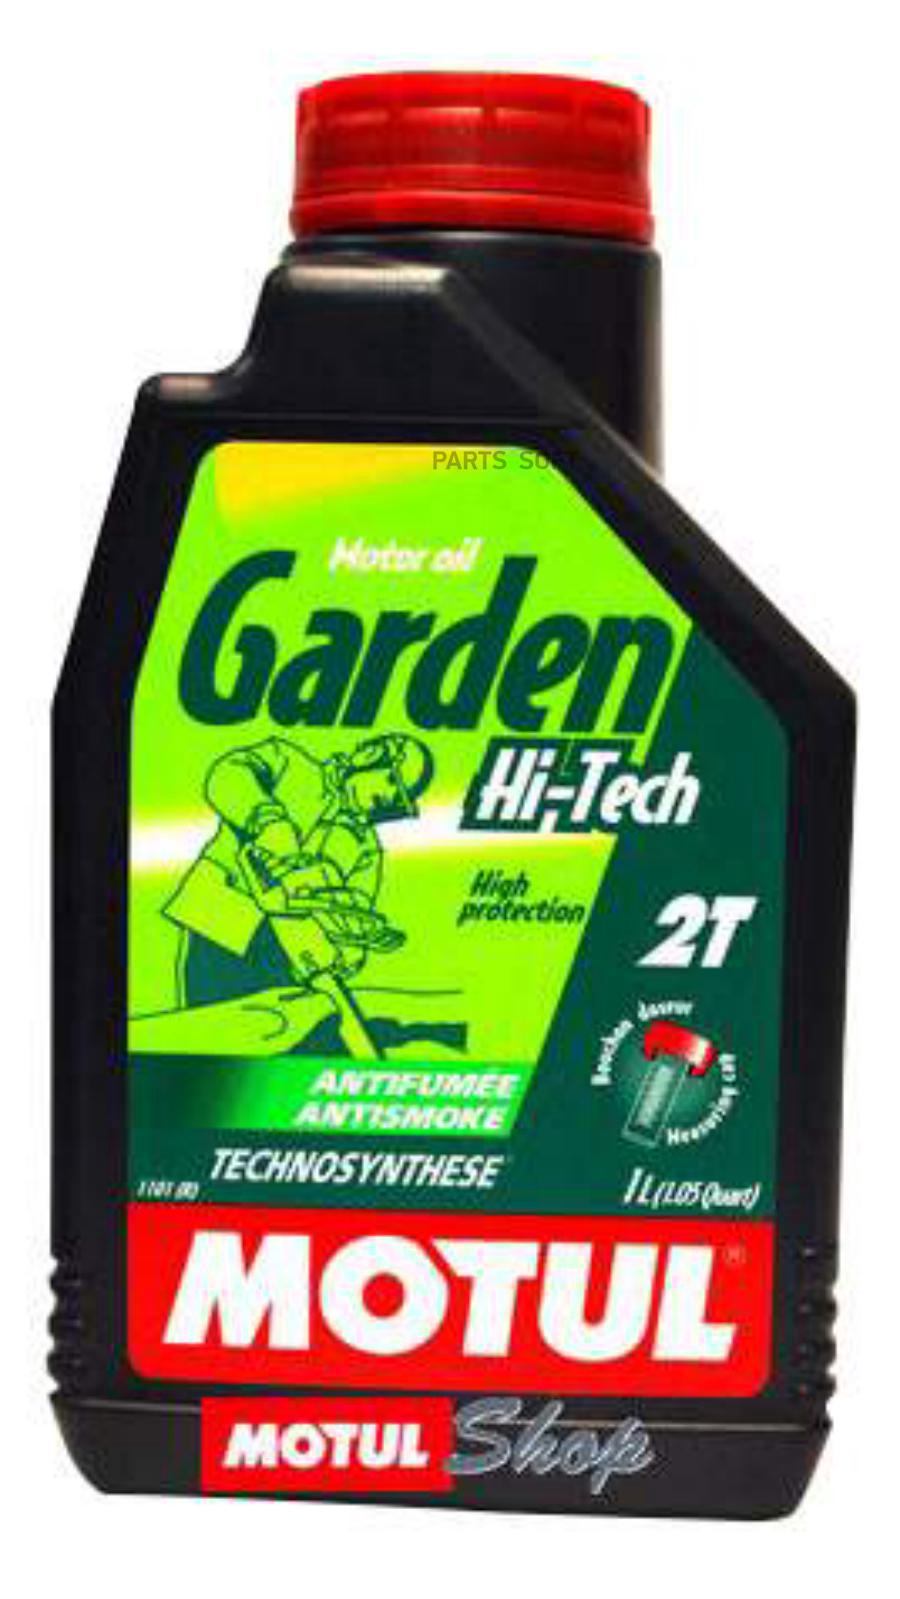 Motul Garden 2t 1л. Масло Motul 2t Garden Hi-Tech 1. Мотюль Tech 2t. Масло для садовой техники Motul Garden 2t Hi-Tech 1 л. Масло motul tech